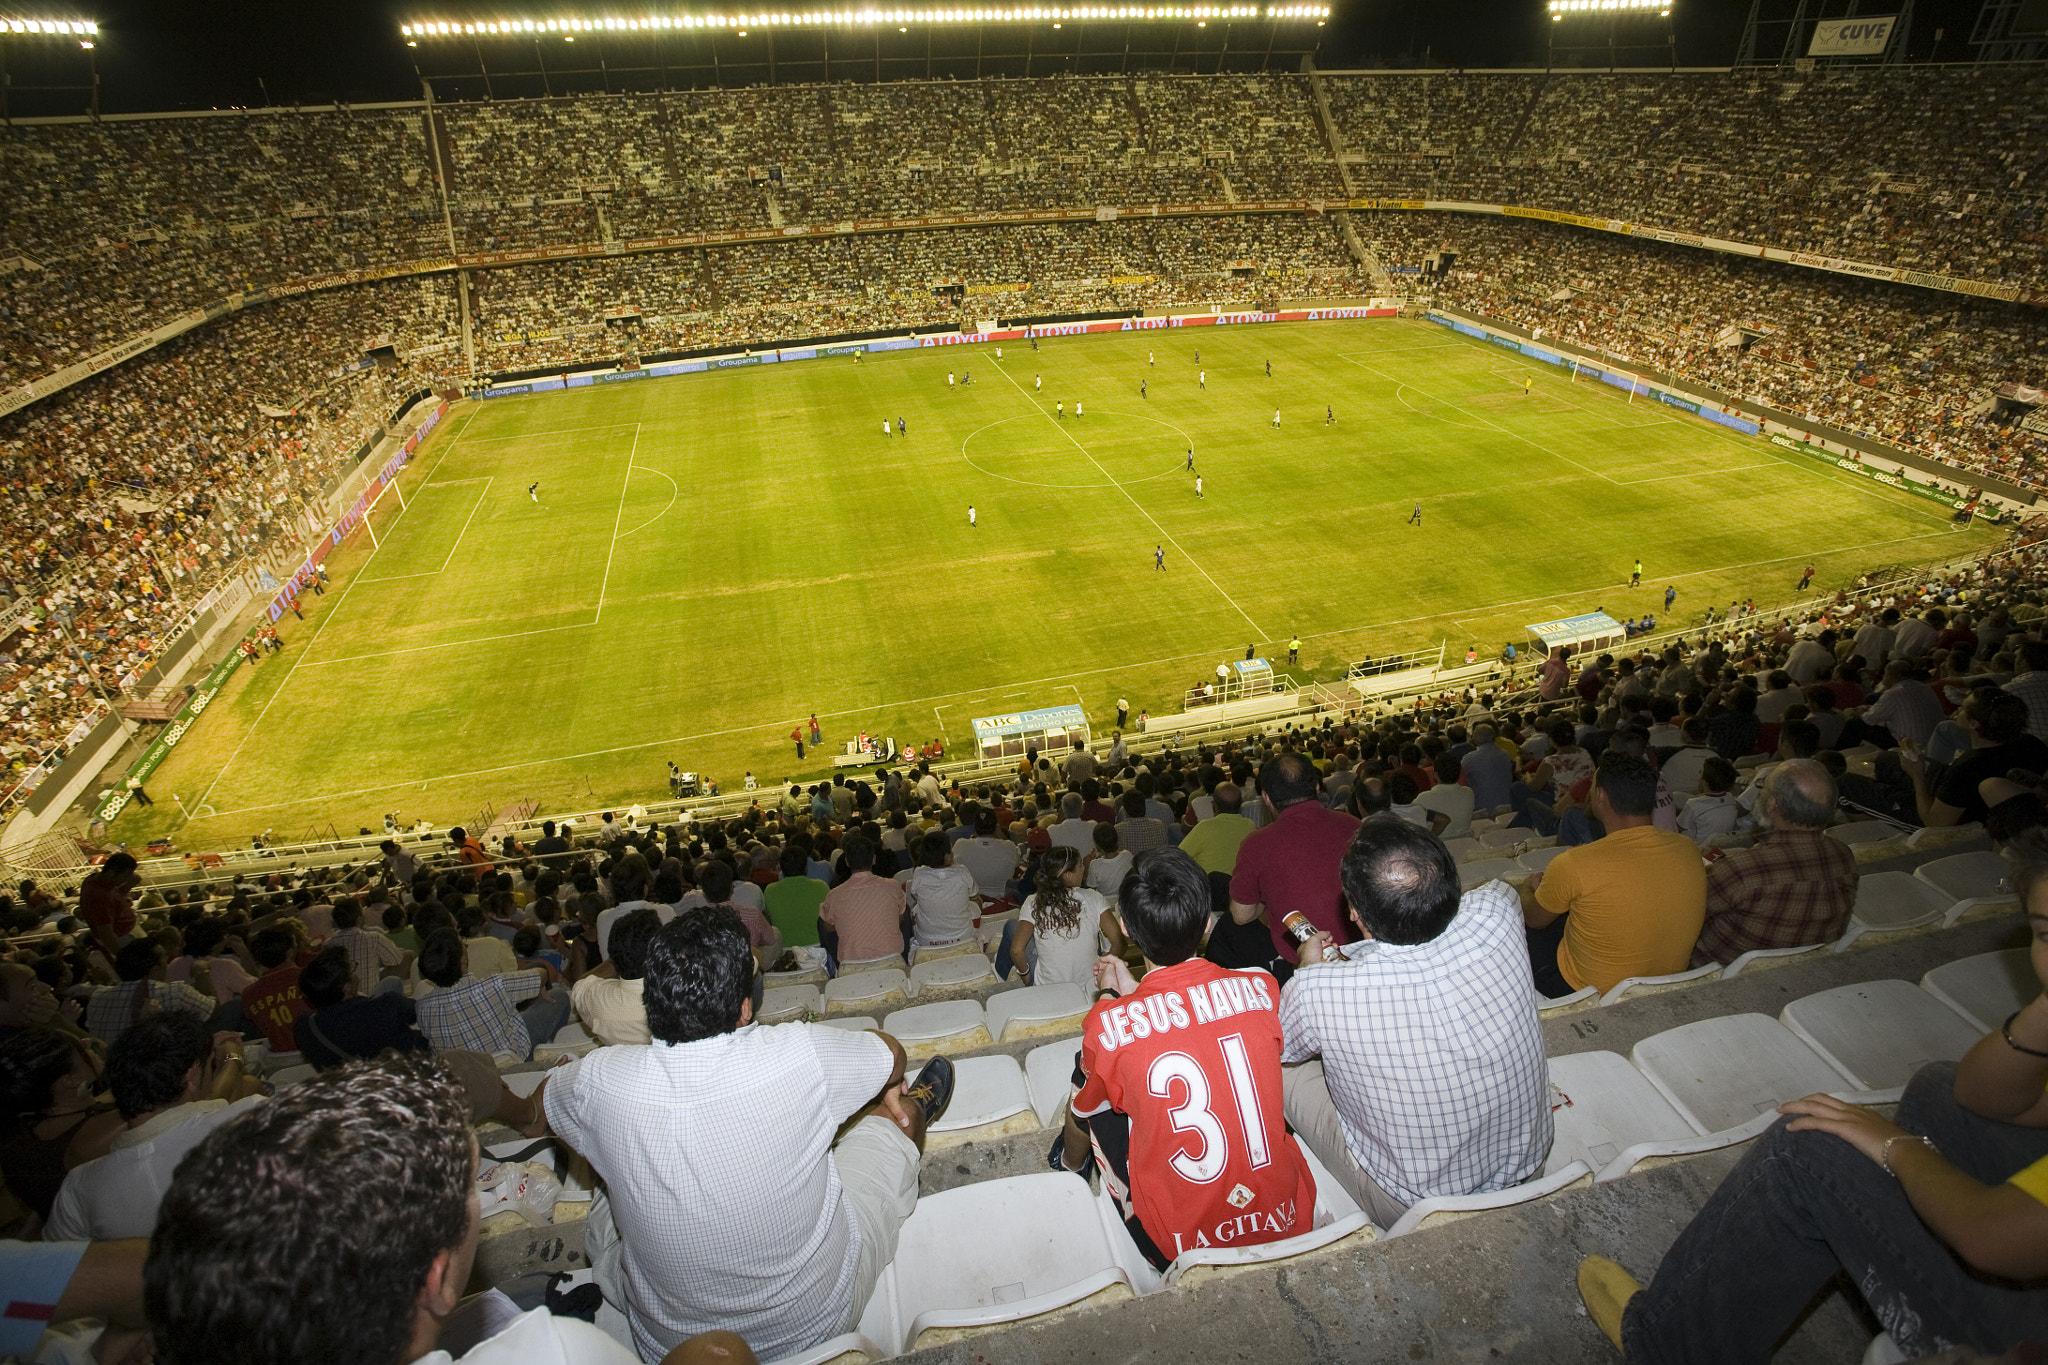 Panoramic view of Sanchez Pizjuan stadium. Taken at Sanchez Pizjuan stadium (Seville, Spain) on 29 A